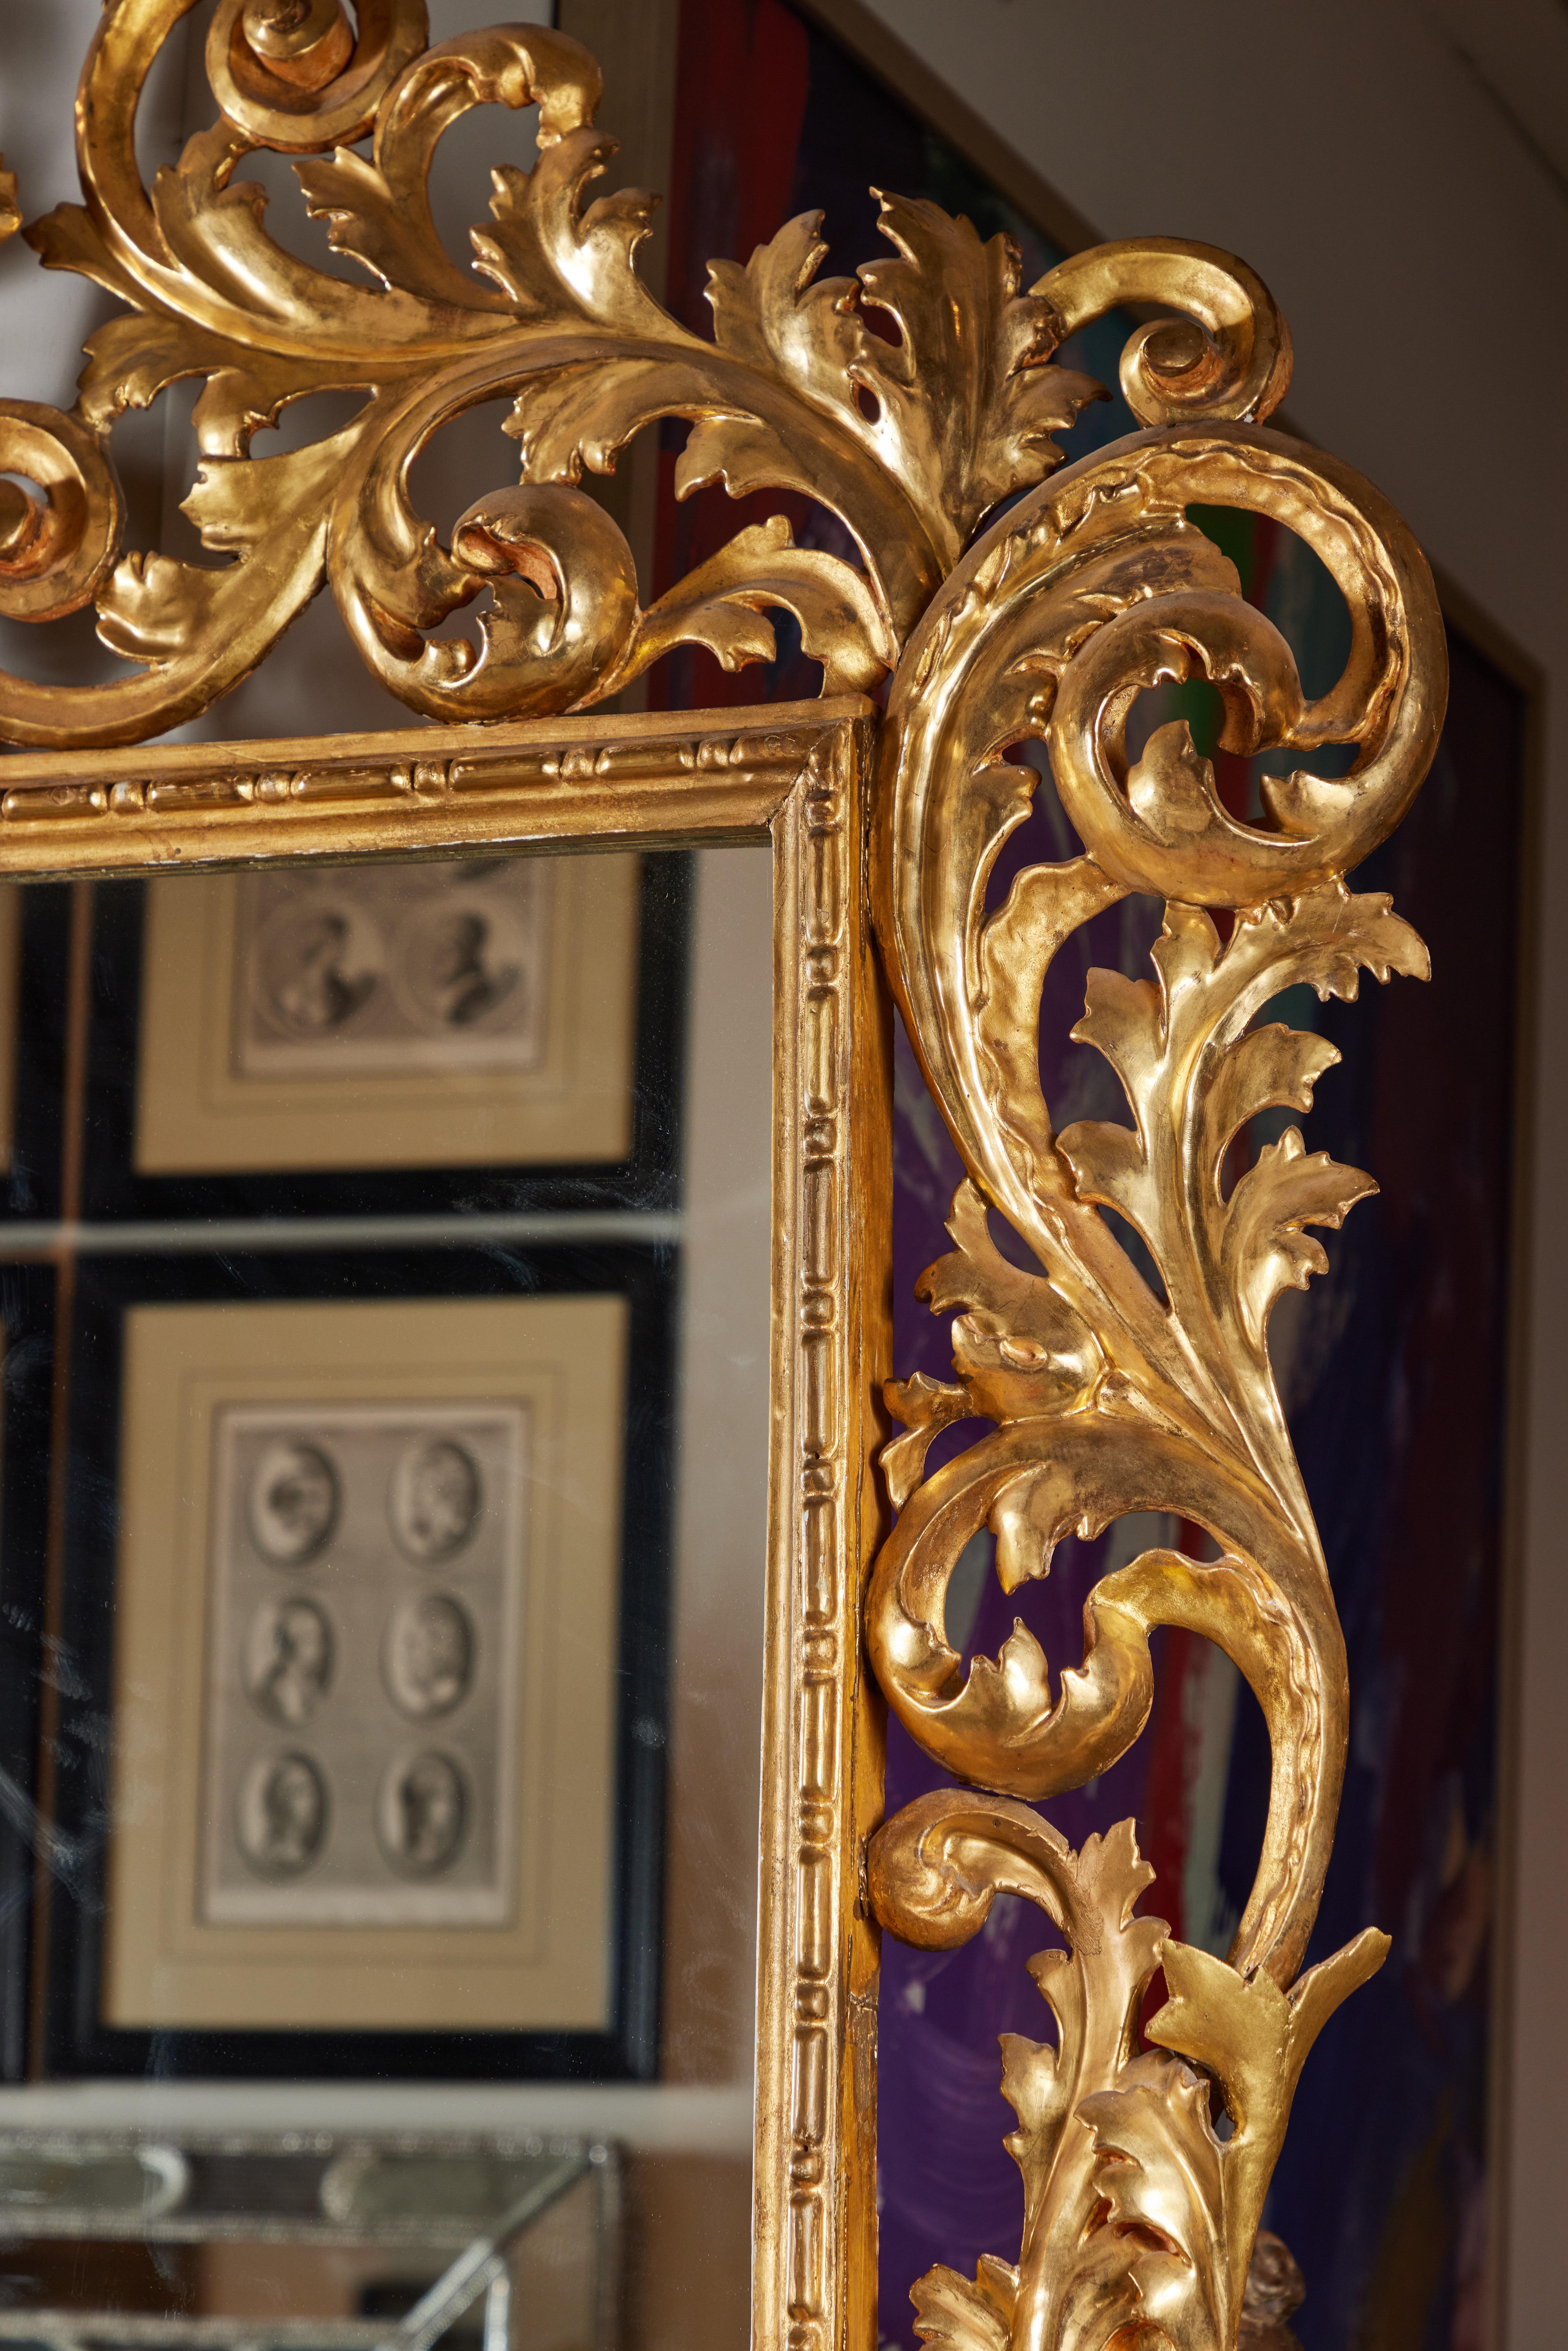 Cadre florentin de grande taille, sculpté à la main et doré à l'or fin 22 carats, inséré dans un verre plus récent. Le cadre dramatique, de forme serpentine et feuillue, s'élève vers une belle couronne centrée sur une urne sculptée en relief et